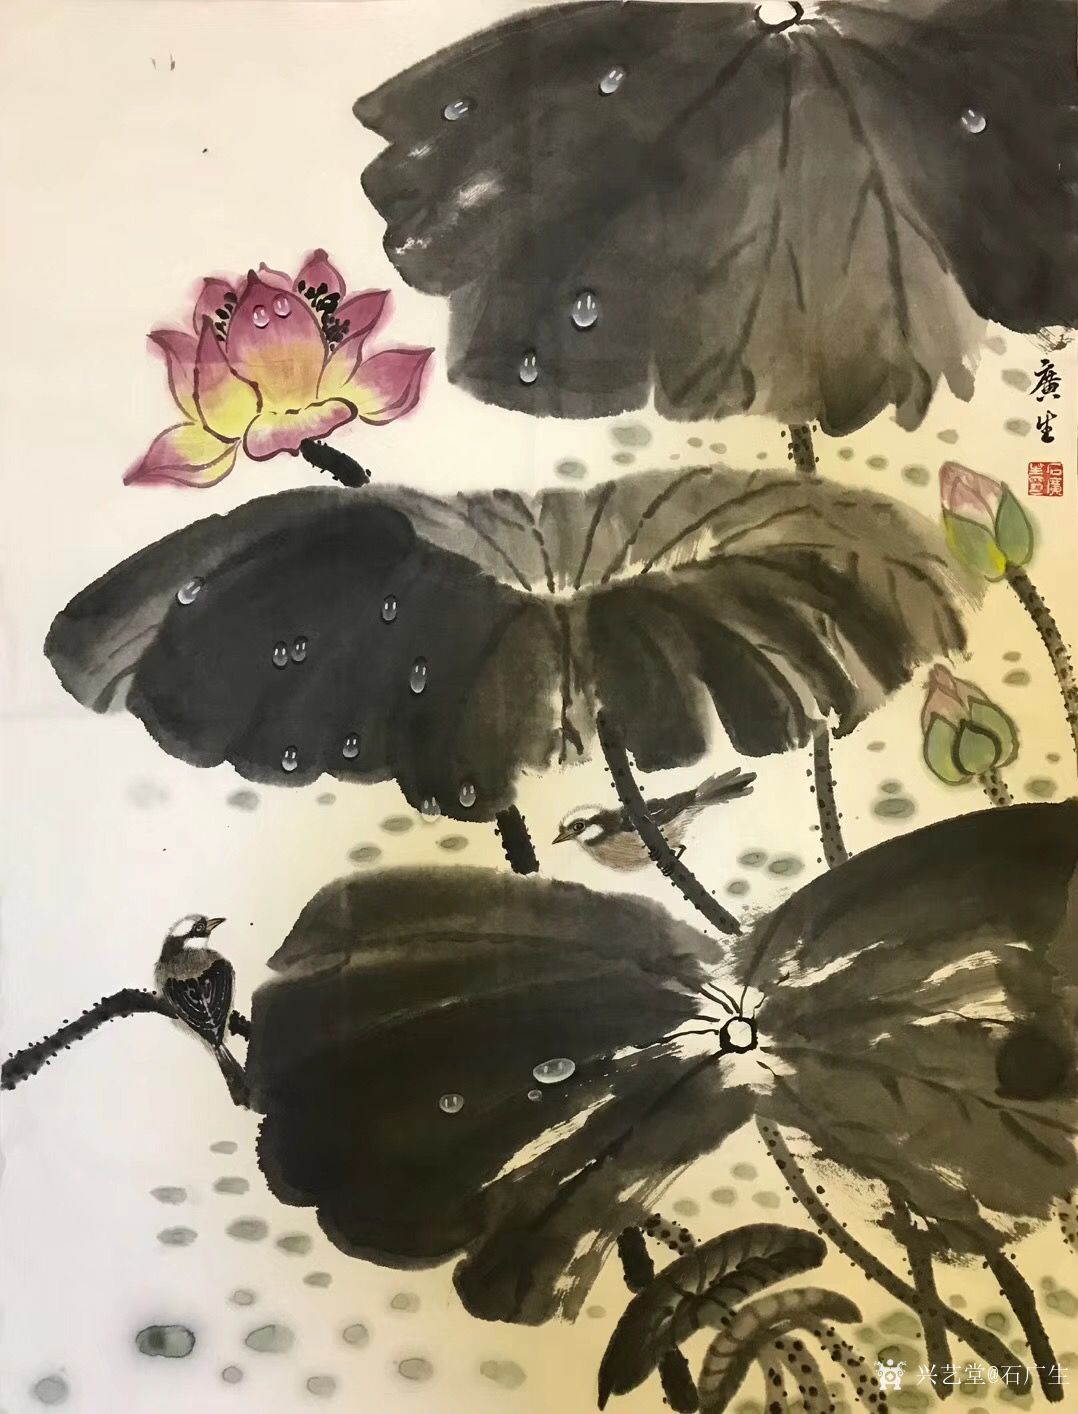 石广生日记-国画《雨后》在写意画中加入工笔的手法,也未尝不可